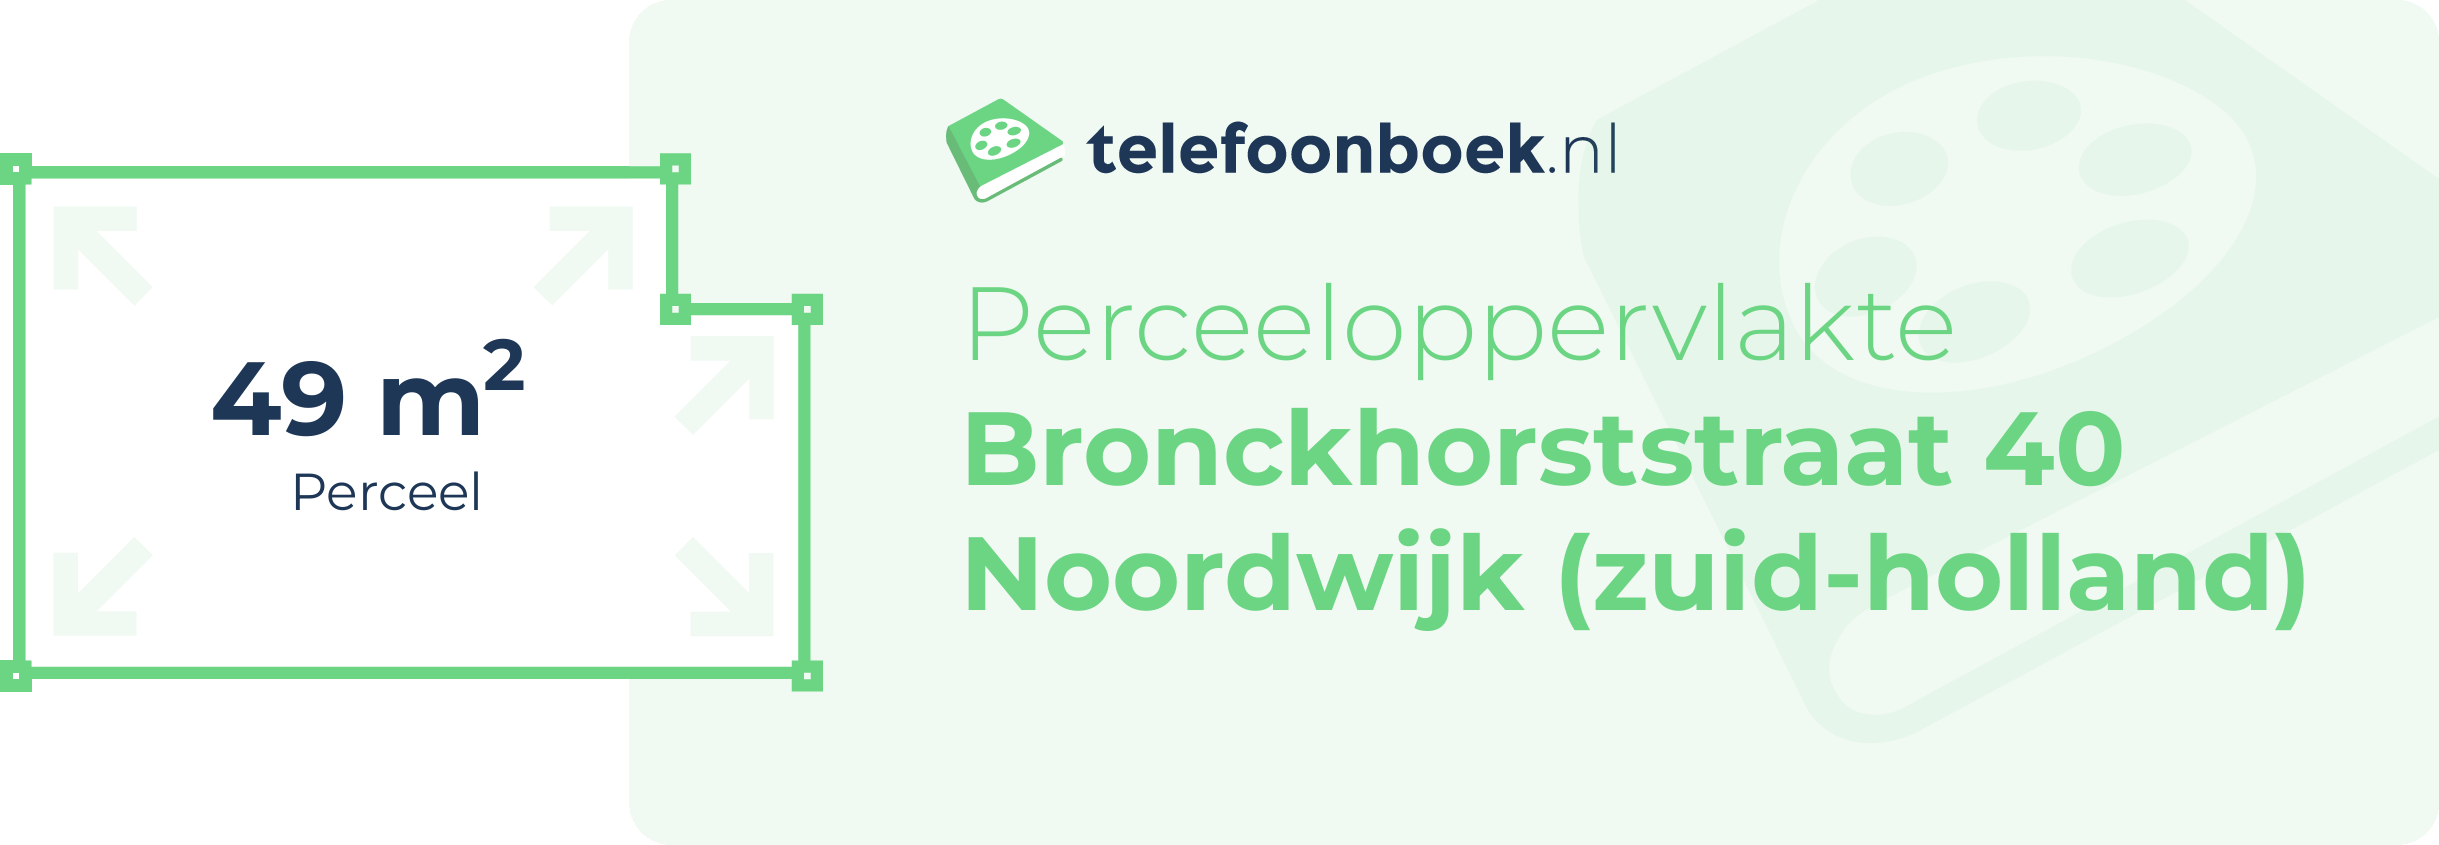 Perceeloppervlakte Bronckhorststraat 40 Noordwijk (Zuid-Holland)